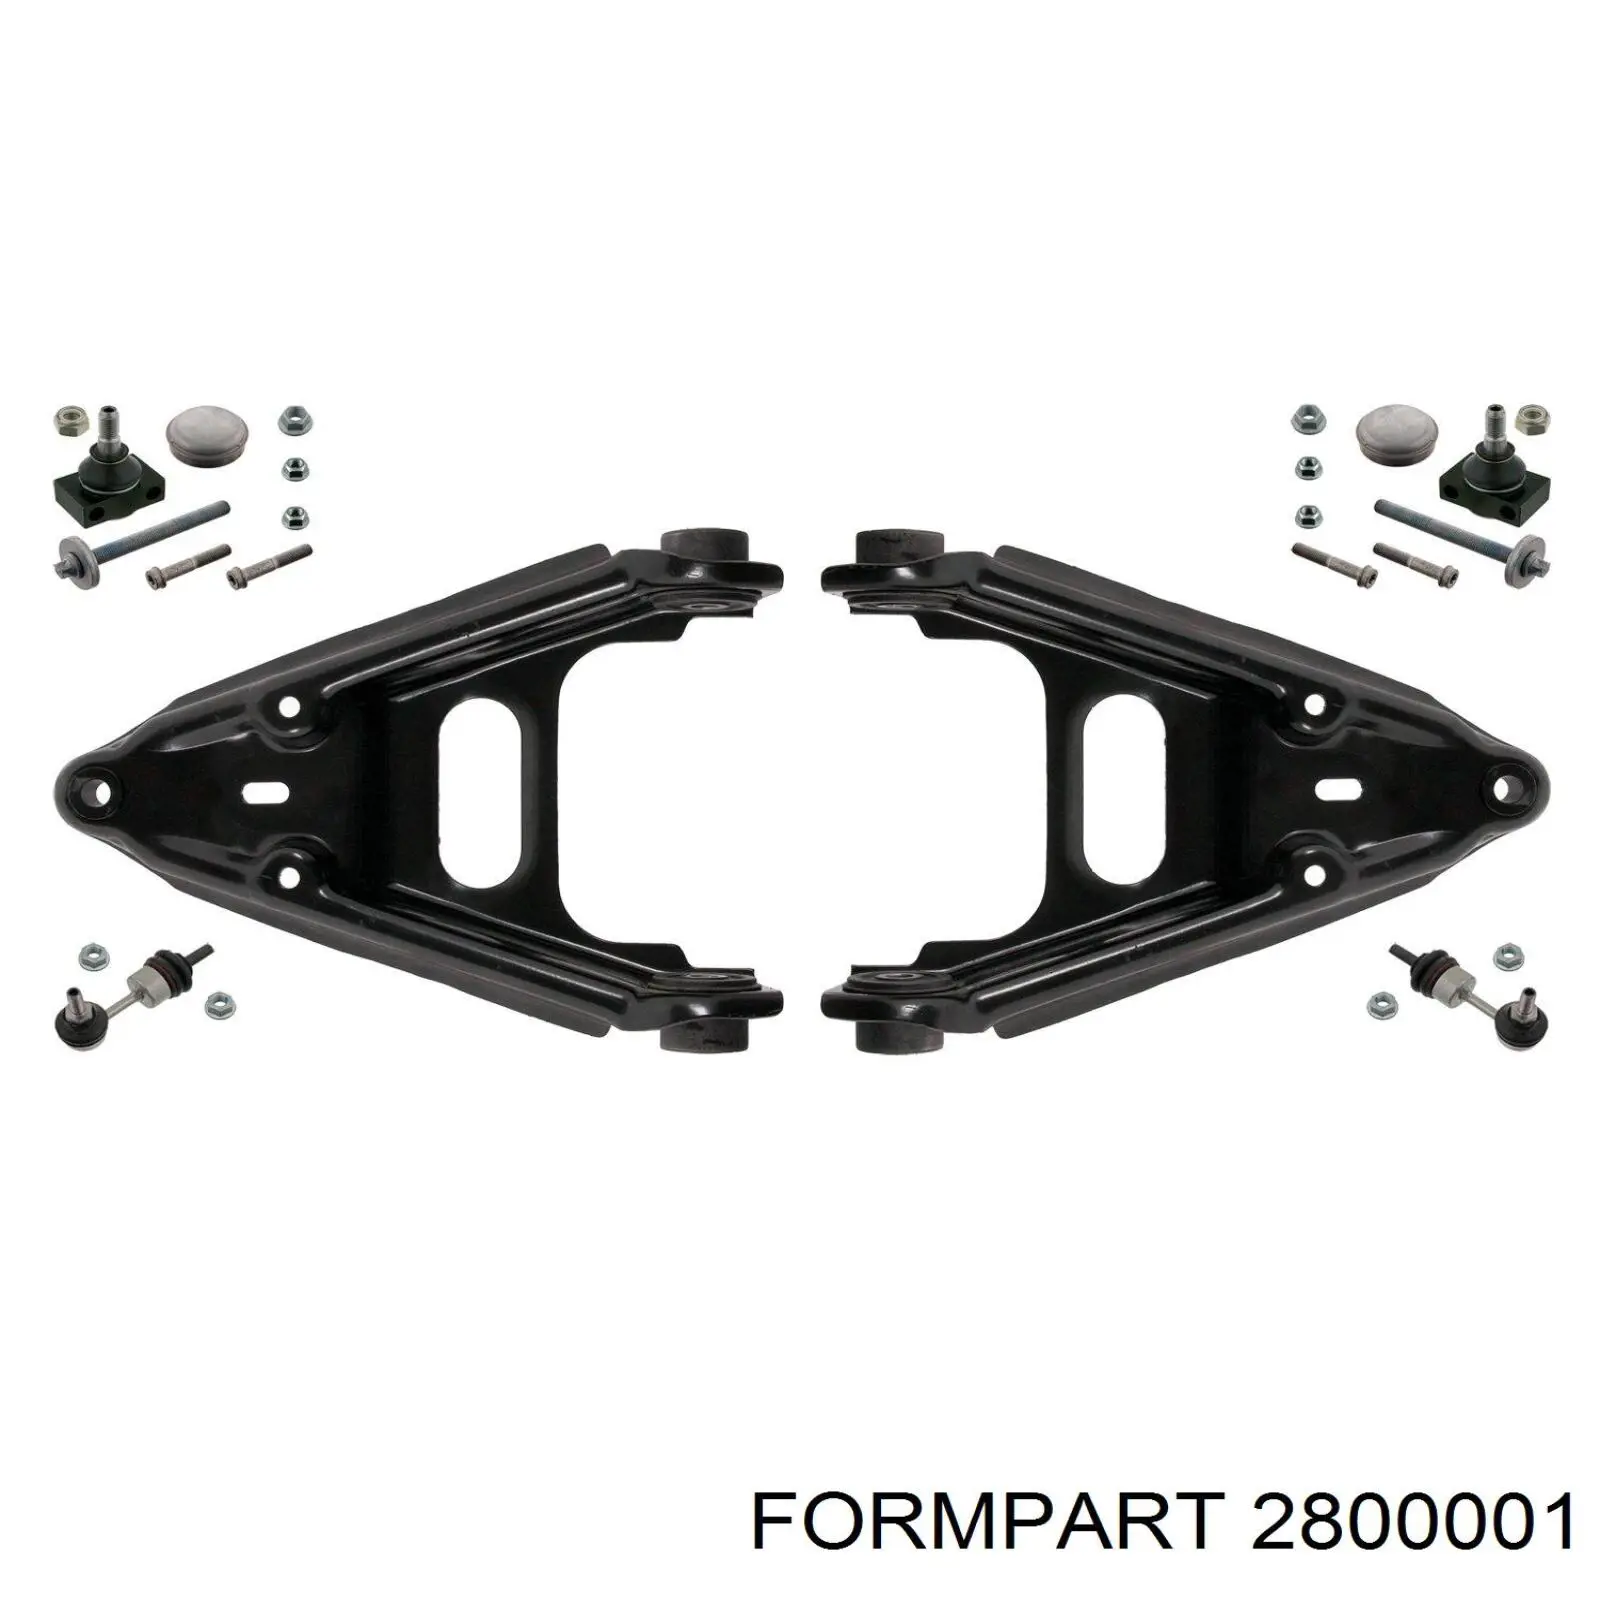 2800001 Formpart/Otoform silentblock de suspensión delantero inferior